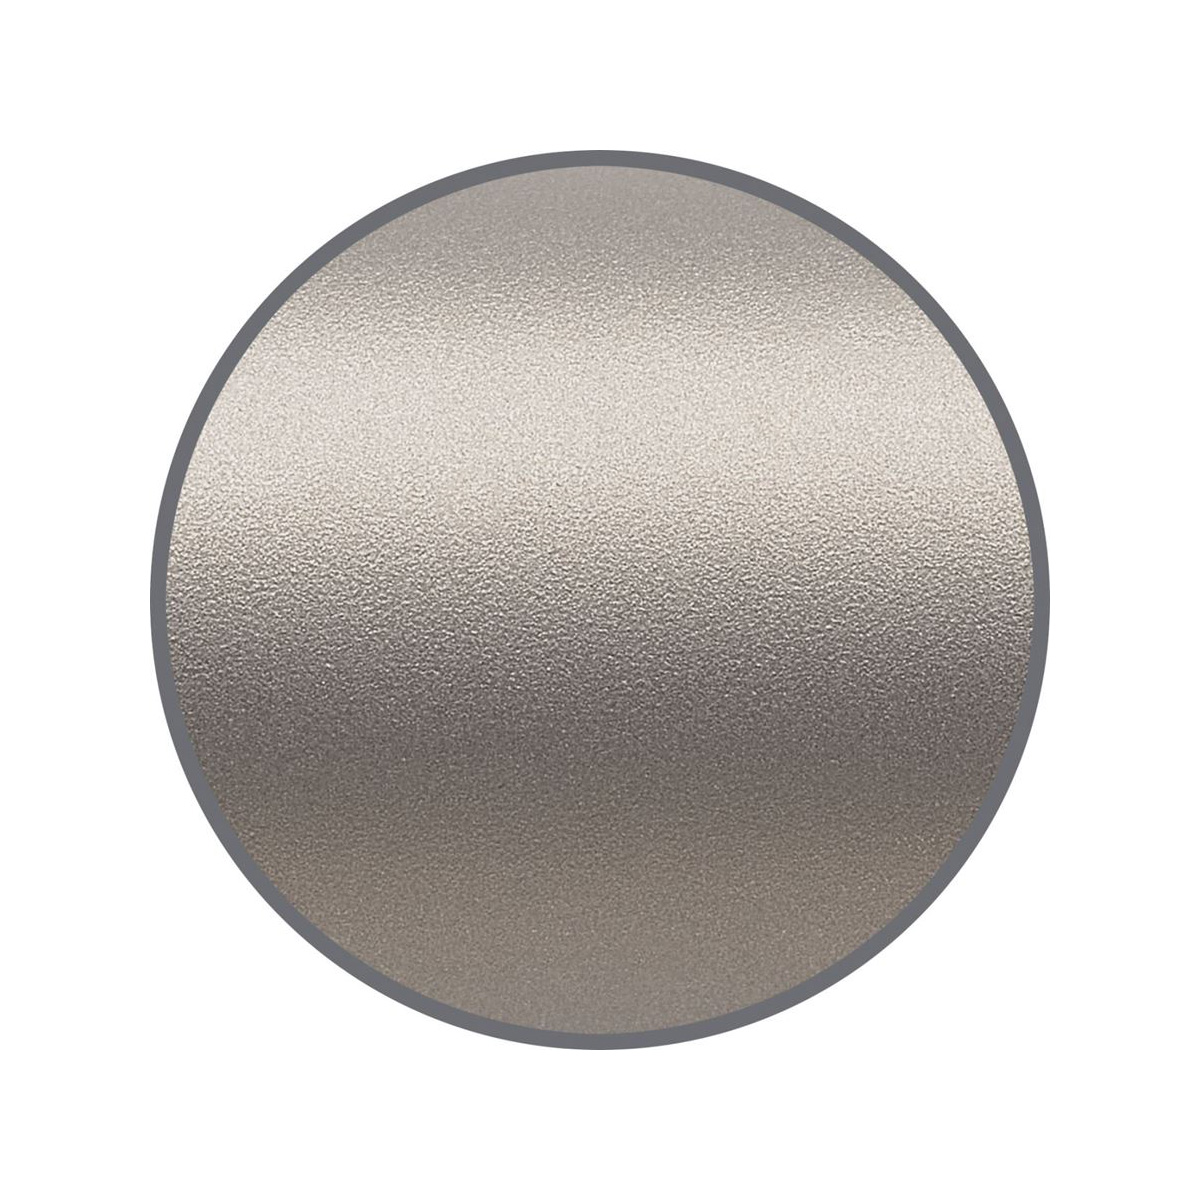 Faber Castell - Neo Slim - Ballpoint Pen - Matt chromed steel